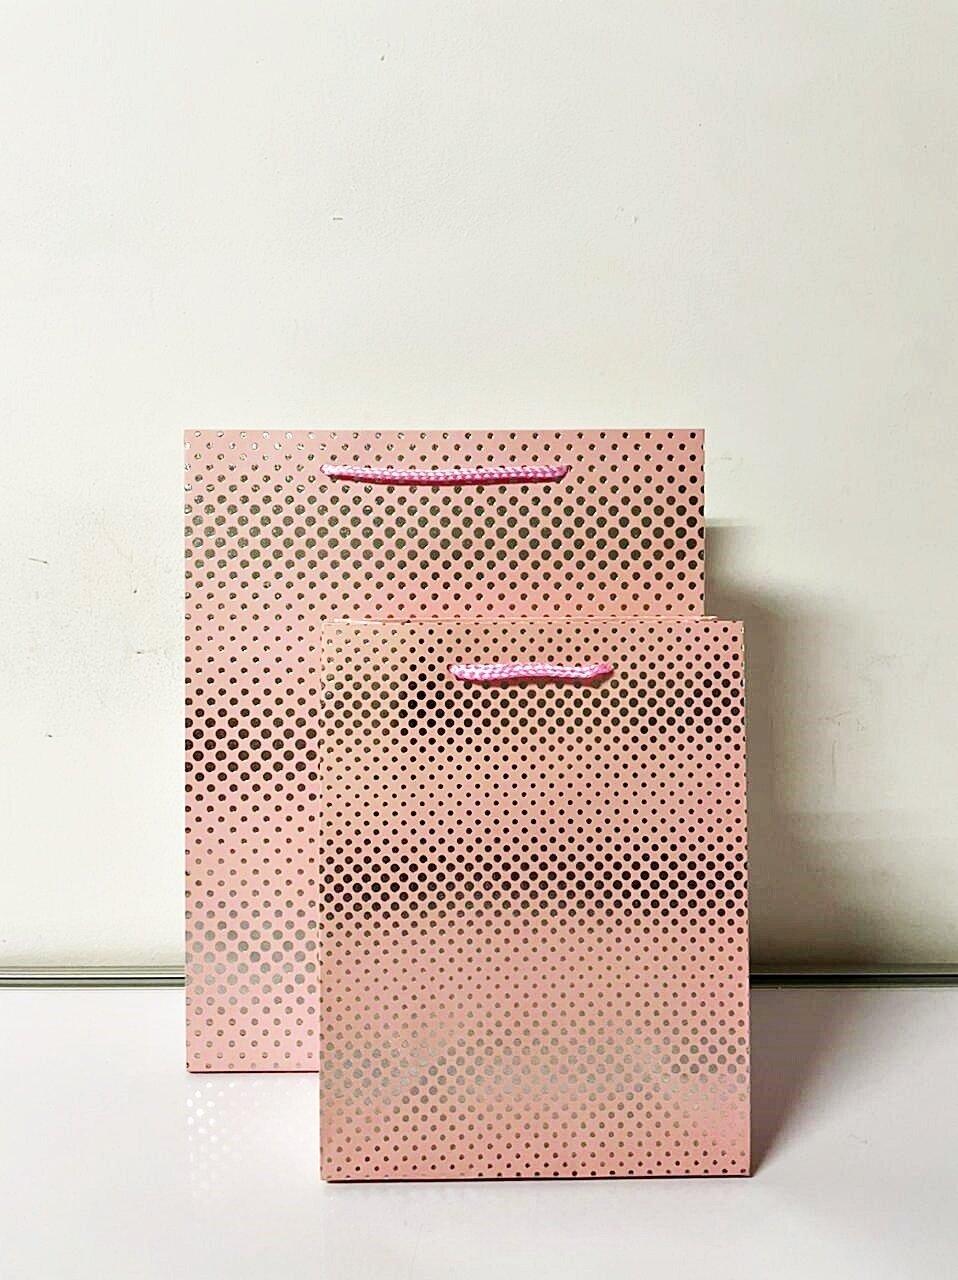 Peach Small Polka Dots Medium Gift Bag PK3 (R15.50 Each)